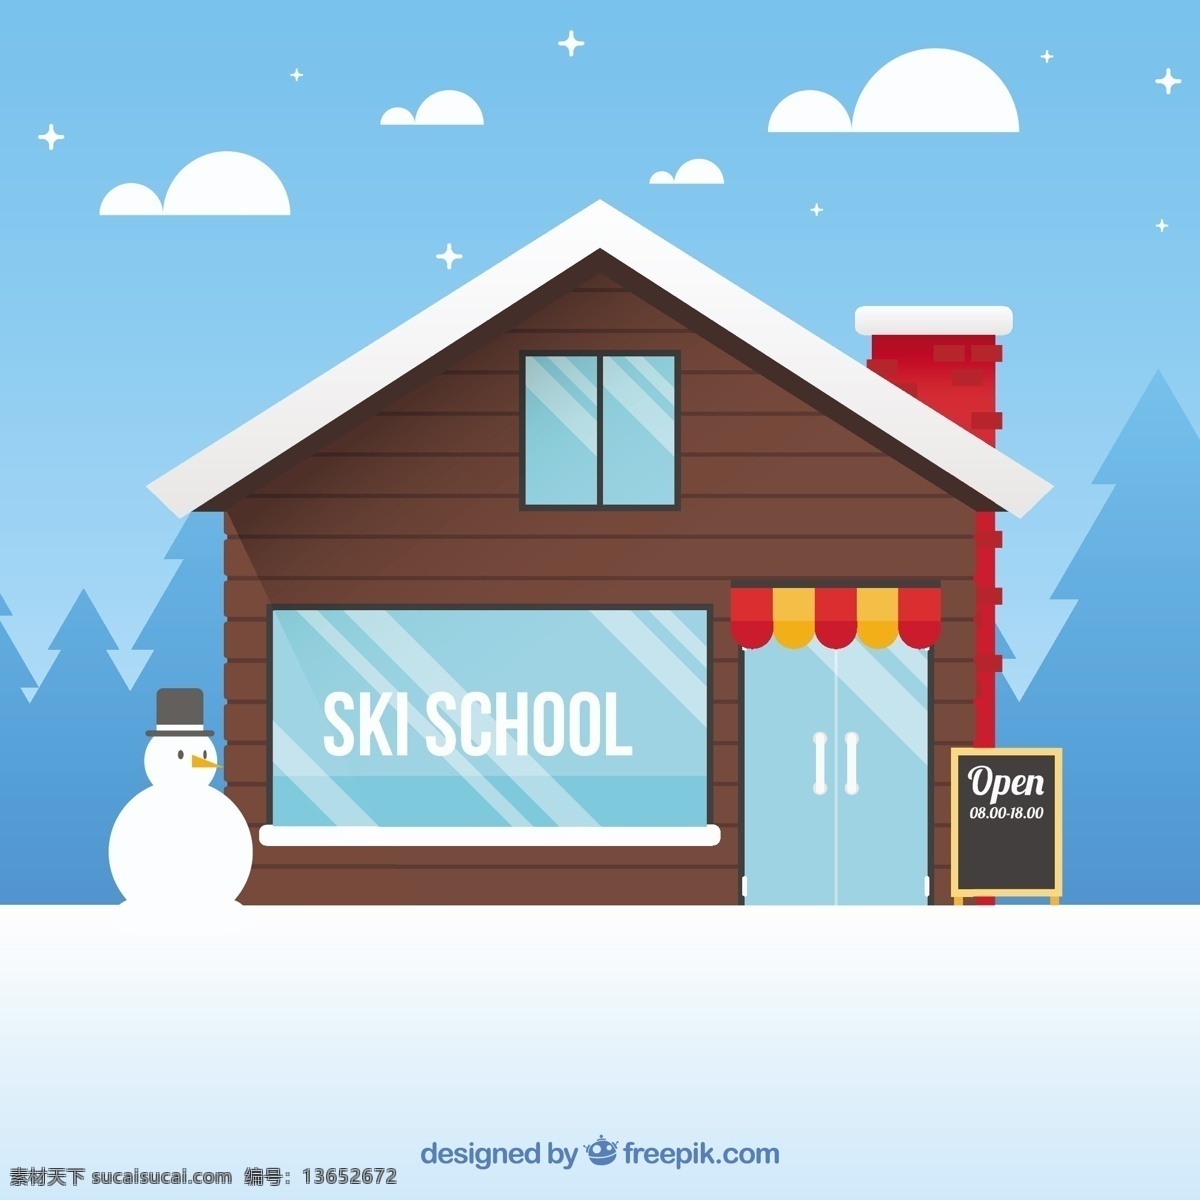 平面设计 中 滑雪 学校 小屋 背景 自然 雪 冬季 景观 平面 冷 自然背景 冬季背景 雪背景 季节 十二月 降雪